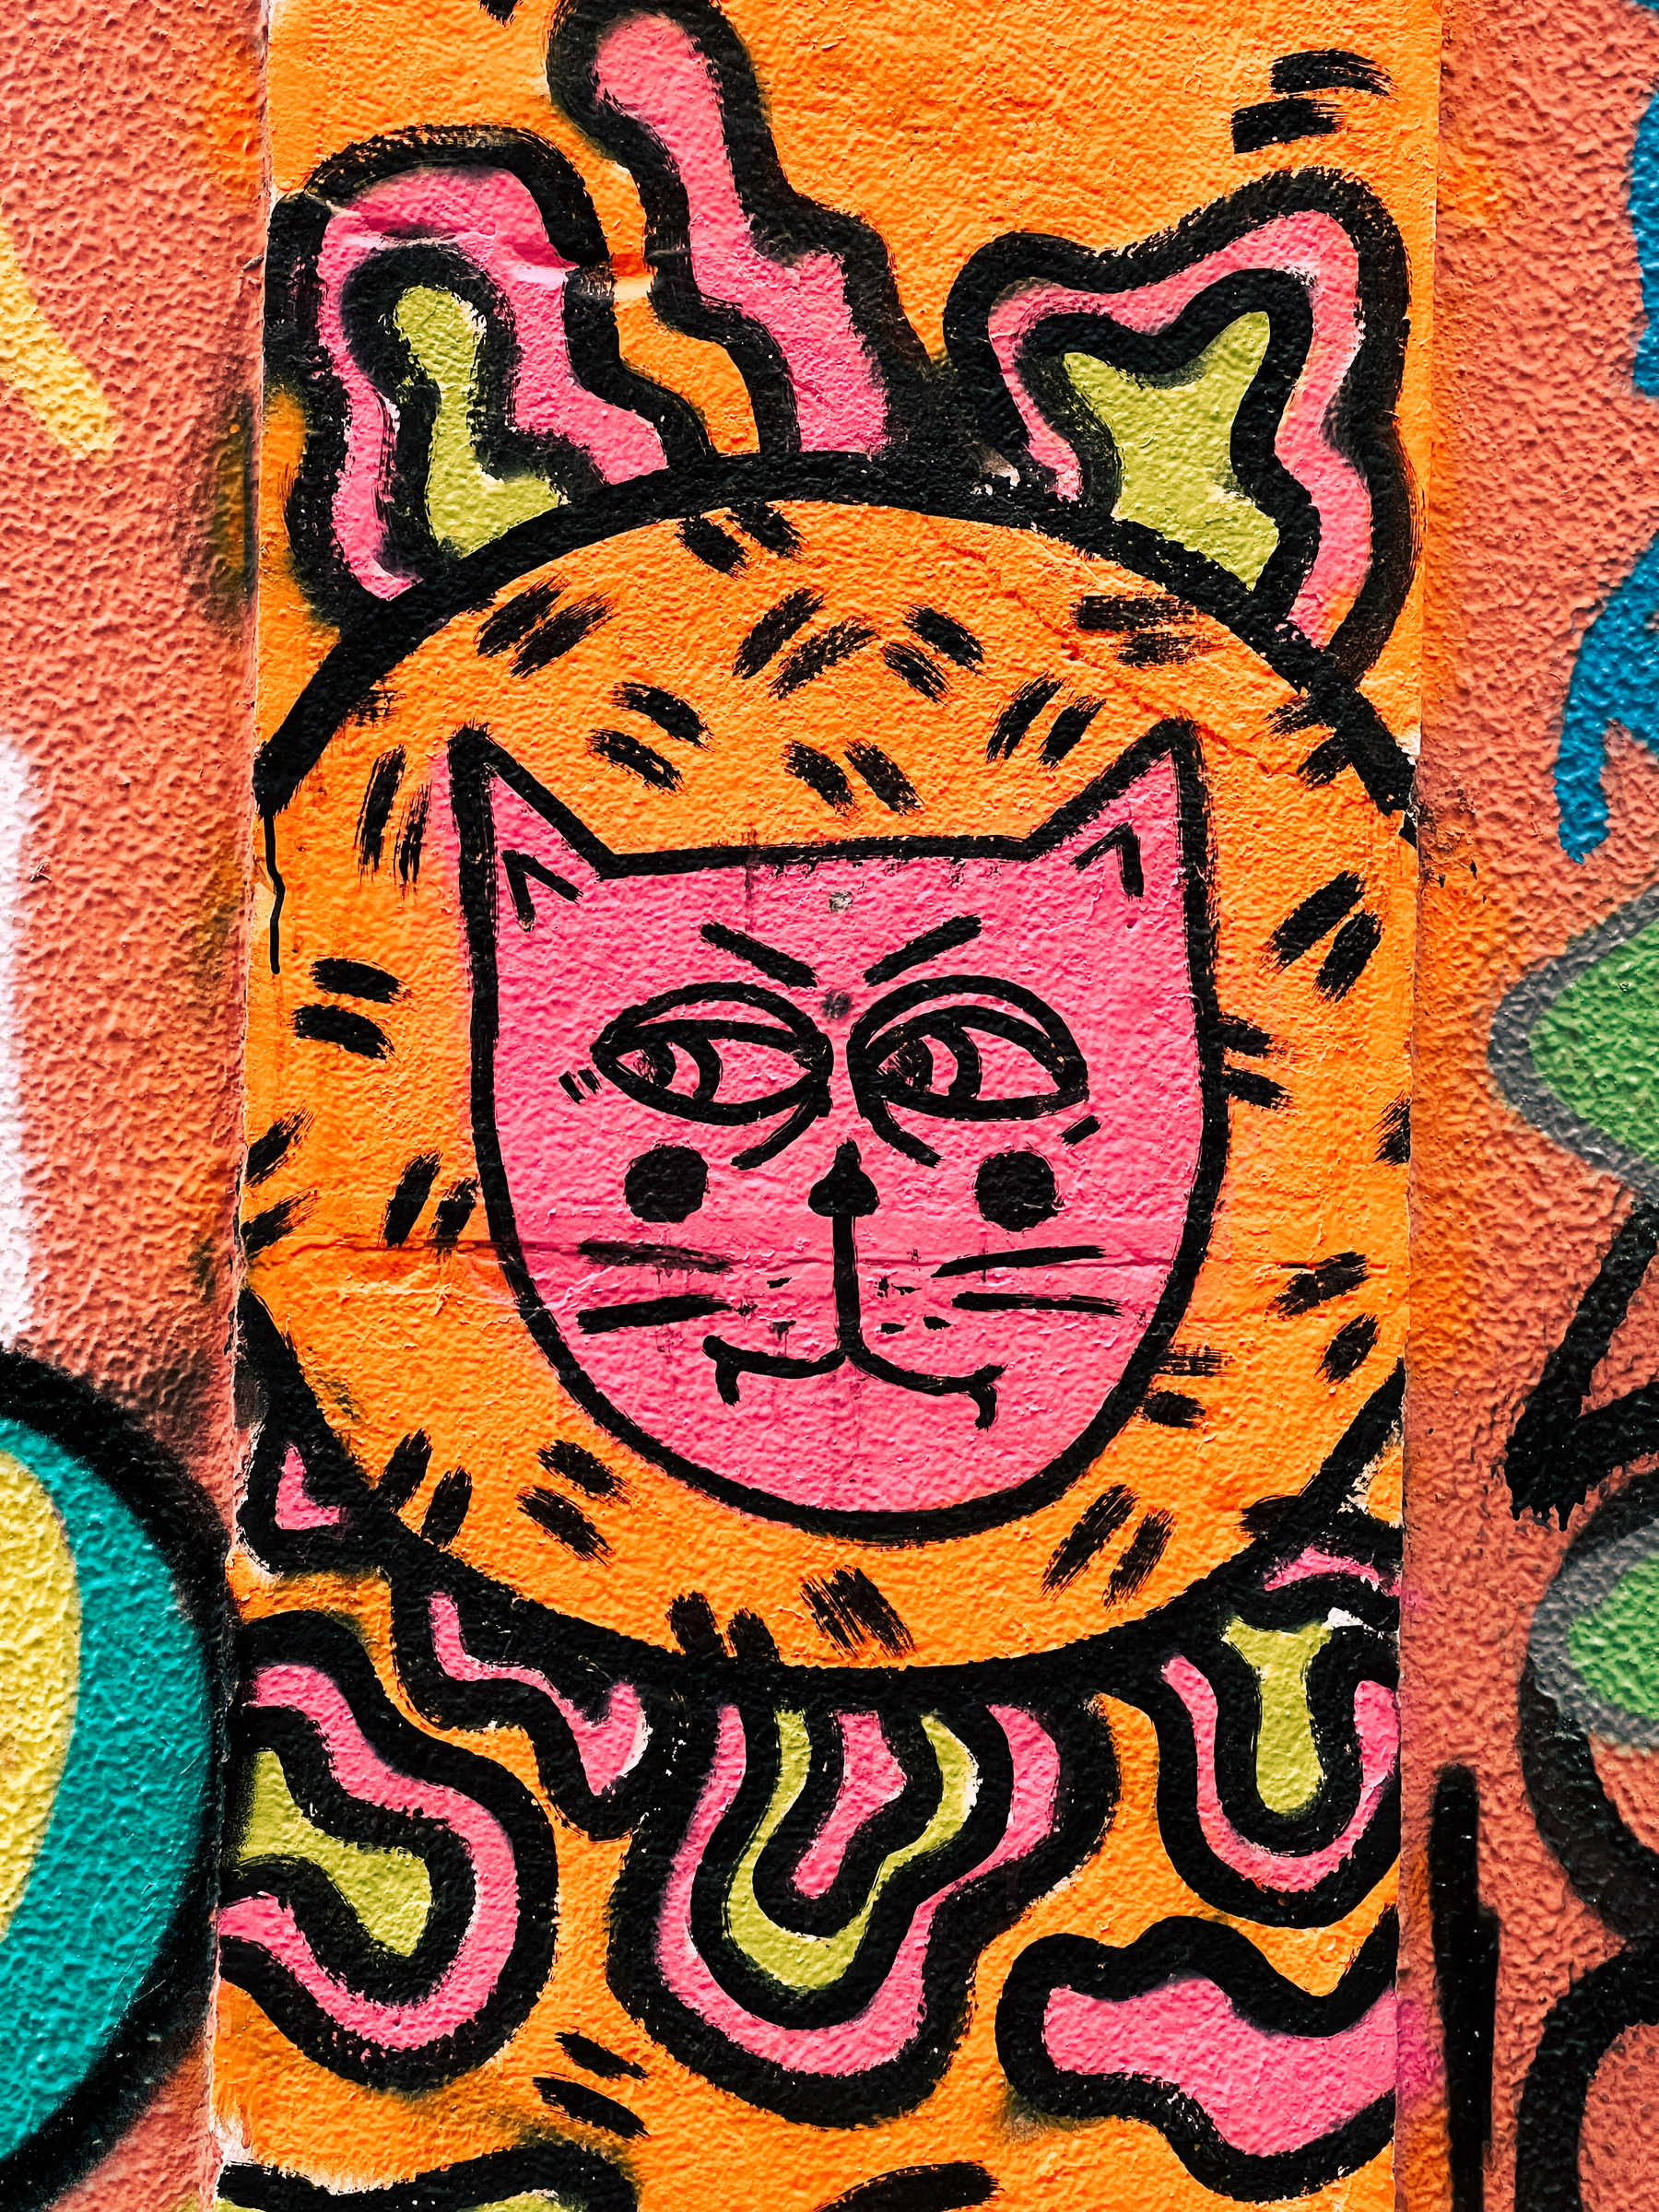 Graffiti, a cat. 